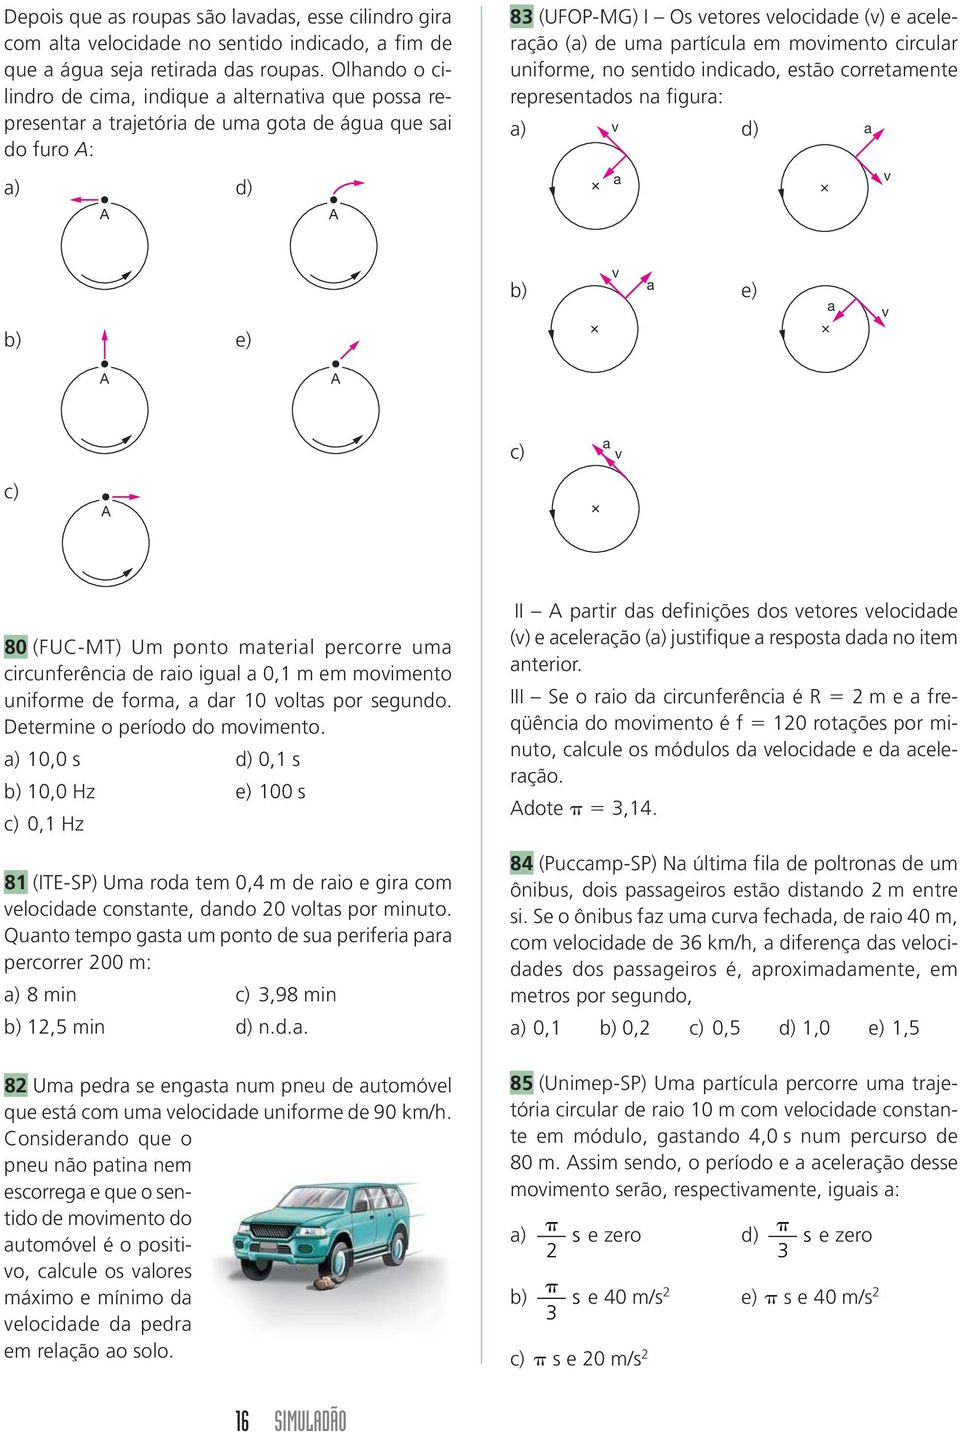 partícula em movimento circular uniforme, no sentido indicado, estão corretamente representados na figura: a) v d) a a v b) e) v b) a e) a v c) a v c) 80 (FUC-MT) Um ponto material percorre uma